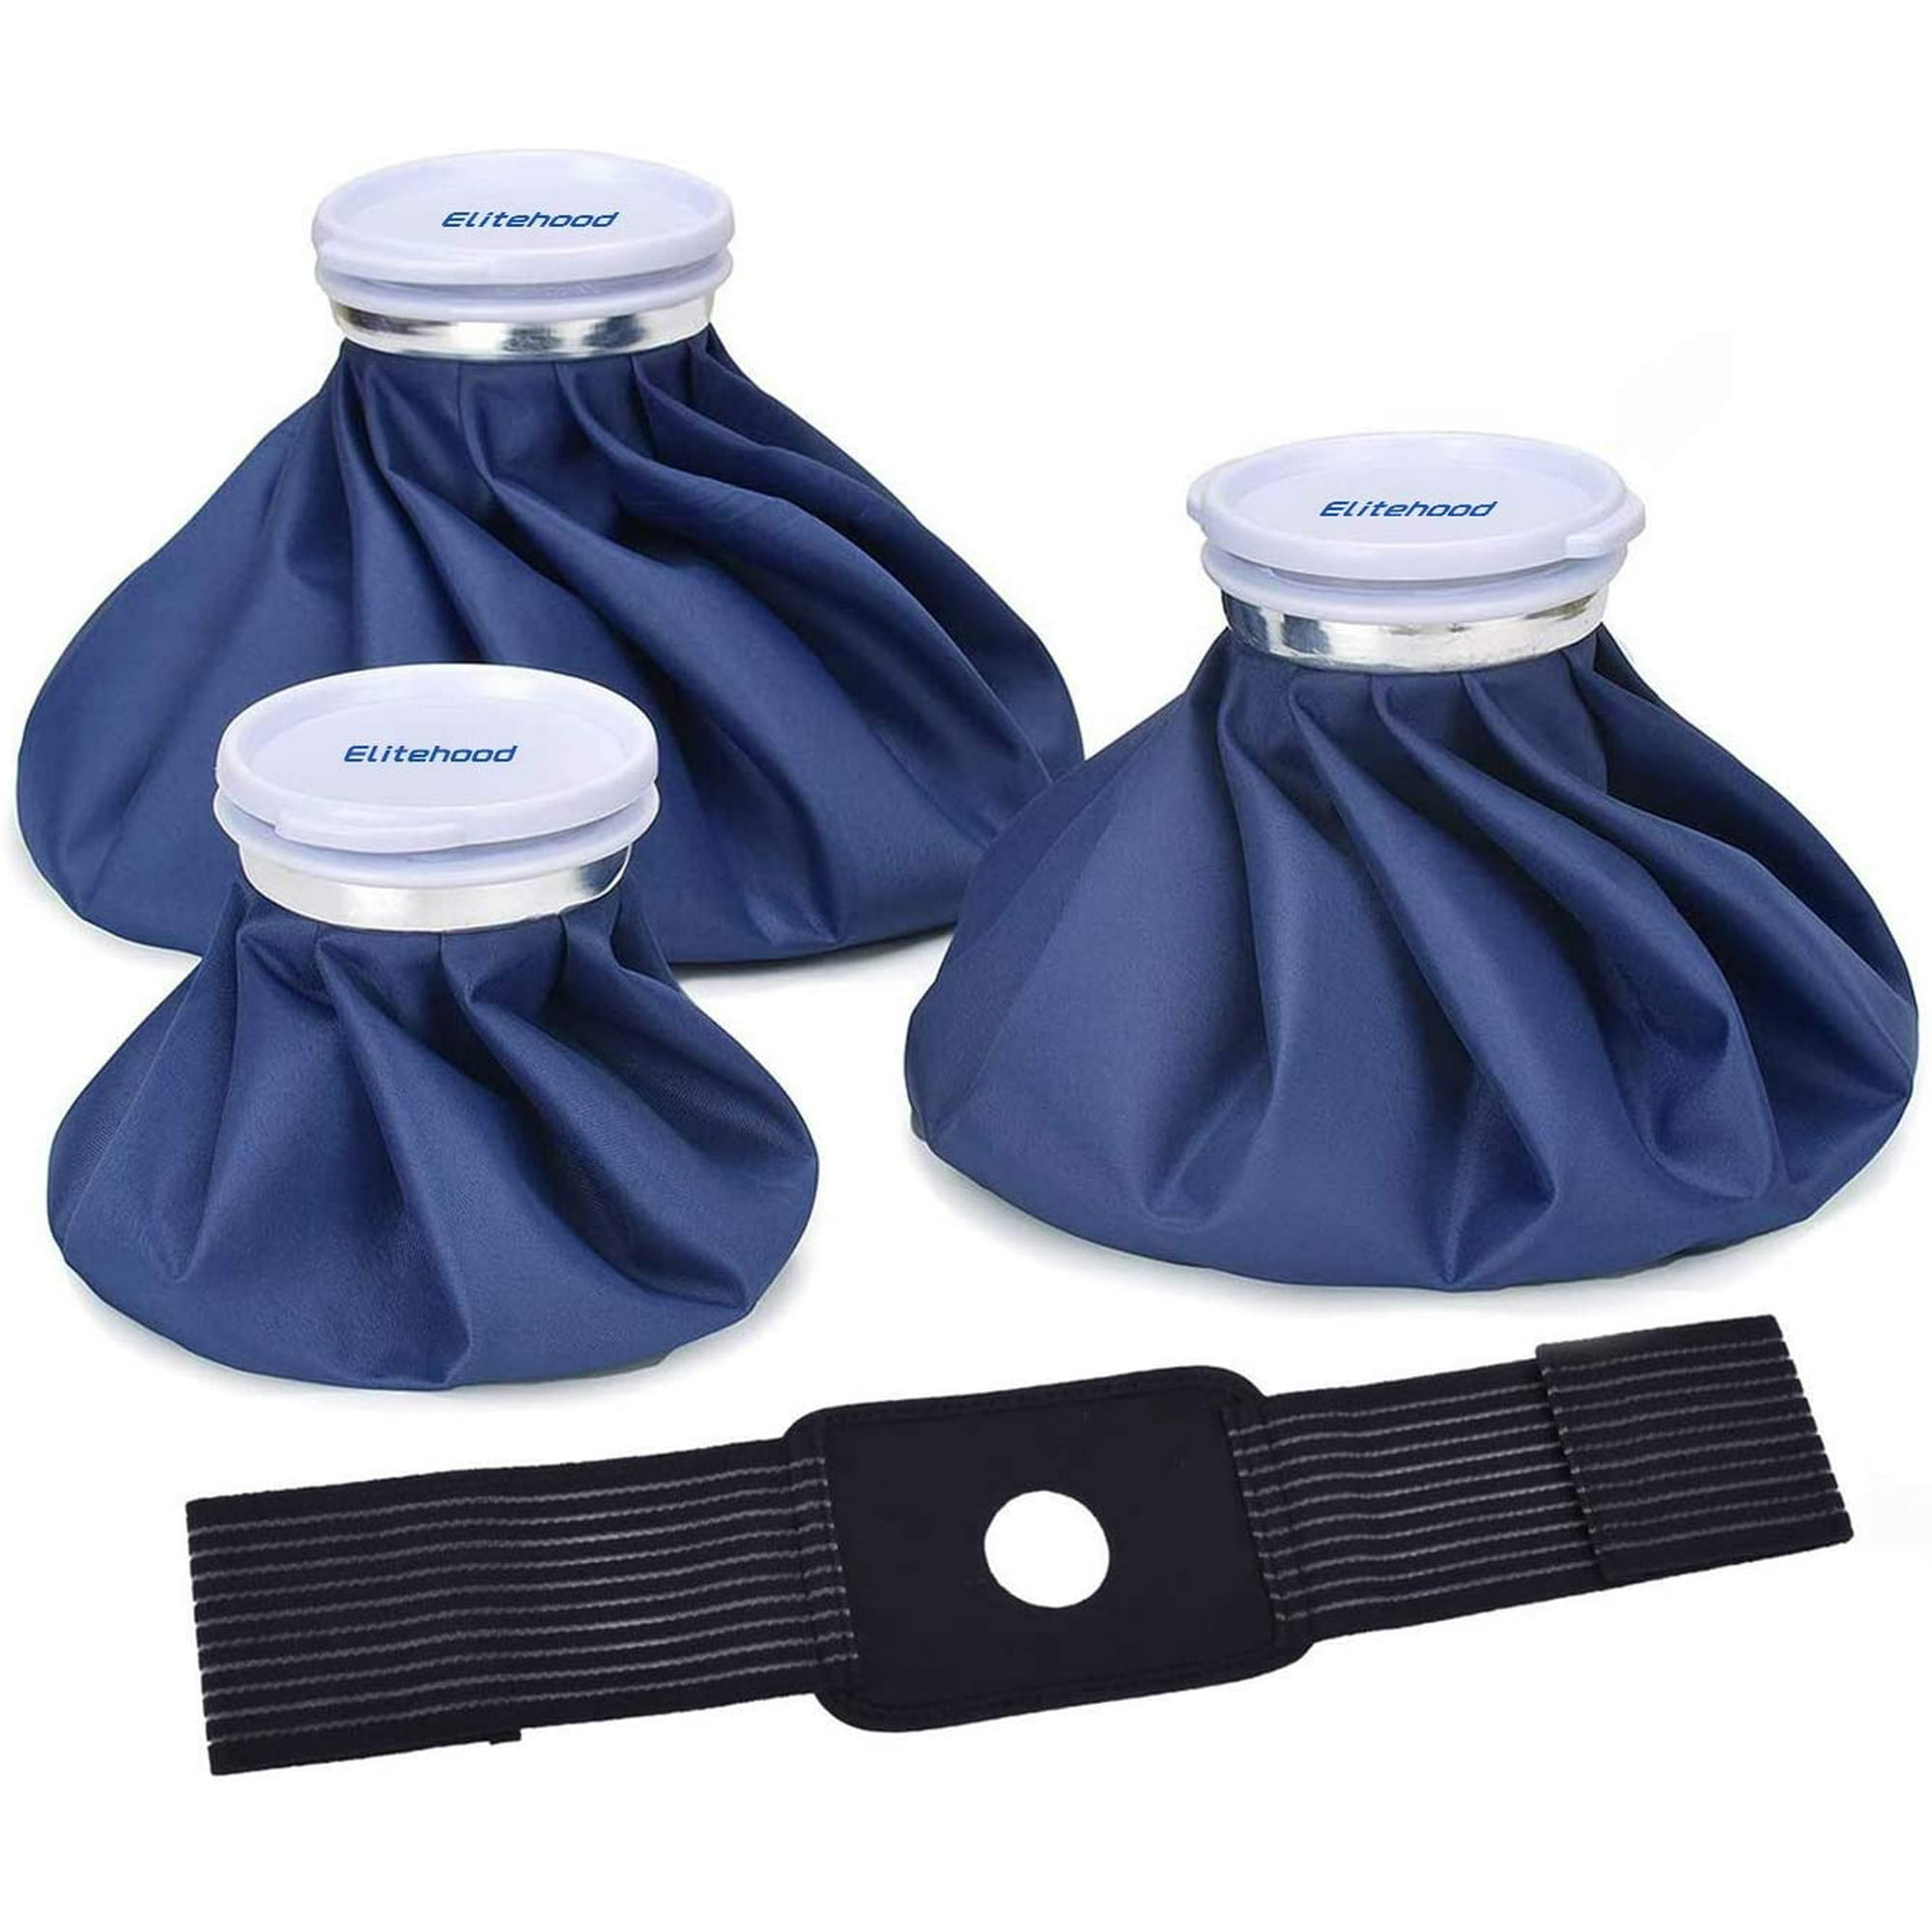 Bolsa de hielo reutilizable Bolsa de agua caliente para lesiones, terapia  de frío y calor y alivio del dolor, azul, (para terapia caliente es 50-60